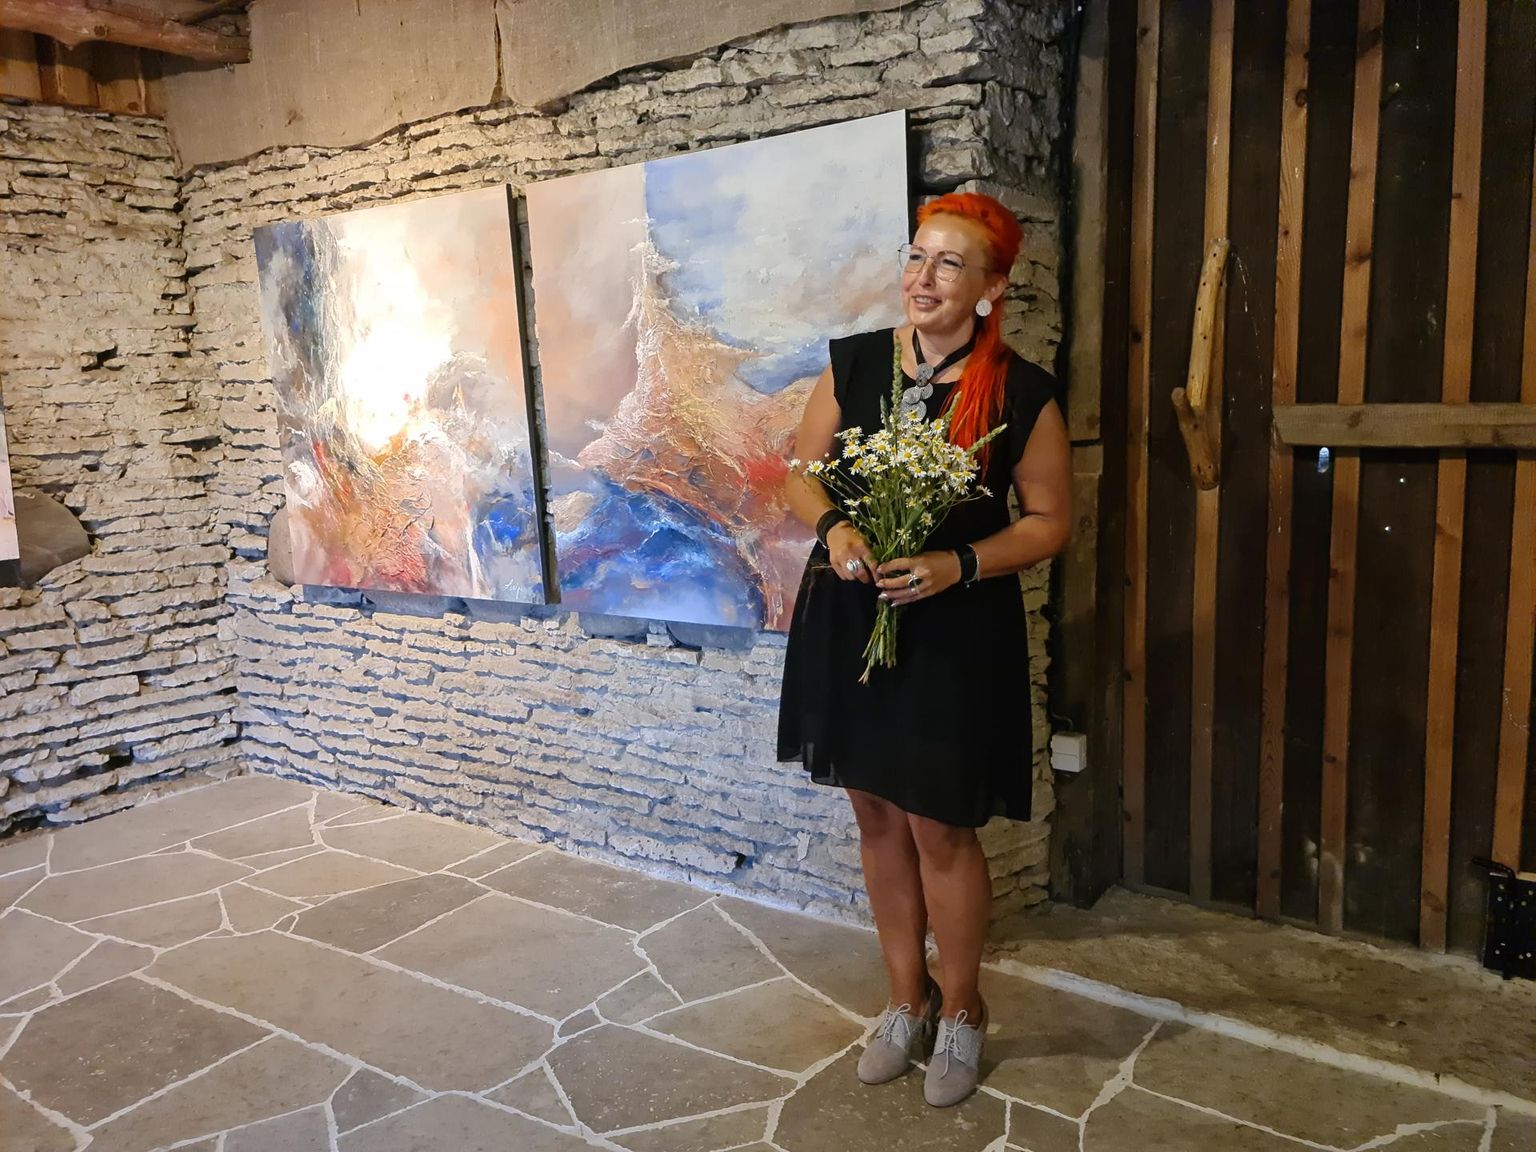 Kunstnik Leekpea avas Karepal Sagritsa muuseumis oma abstraktsete maalide näituse pealkirjaga “Kulgemine”.